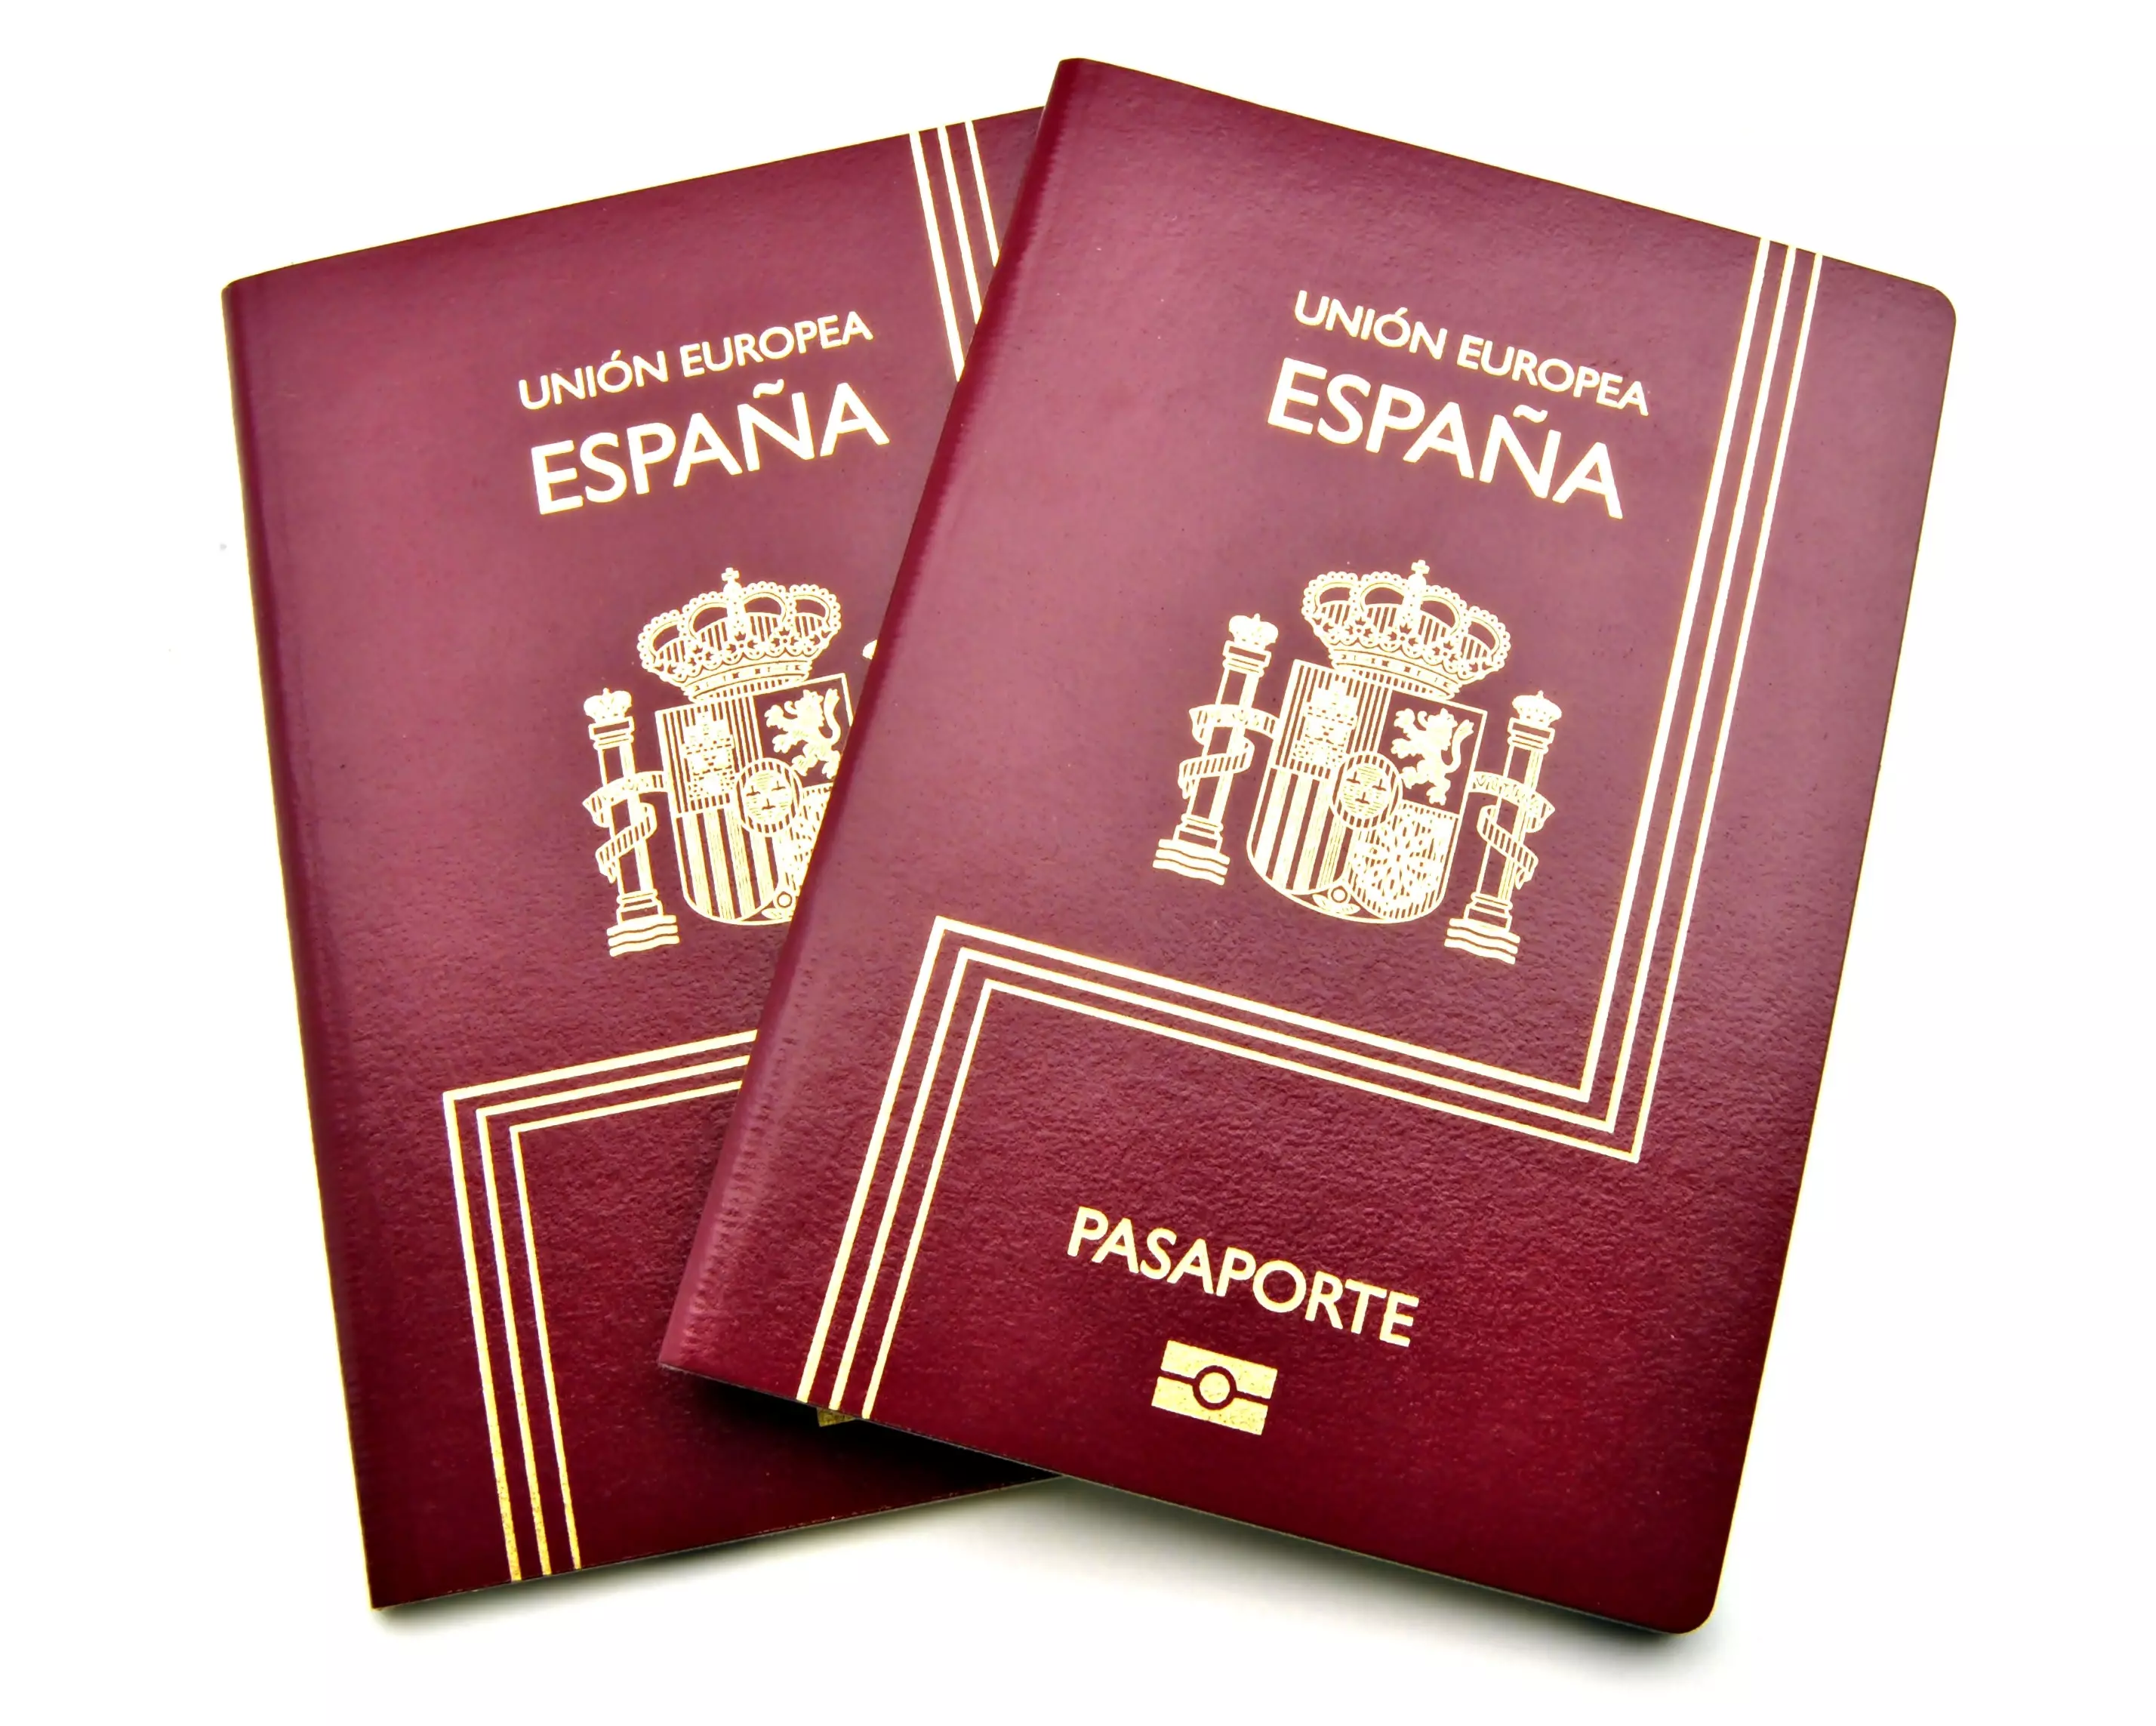 הבקשות יישקלו ללא שיקולים כלכליים. דרכון ספרדי